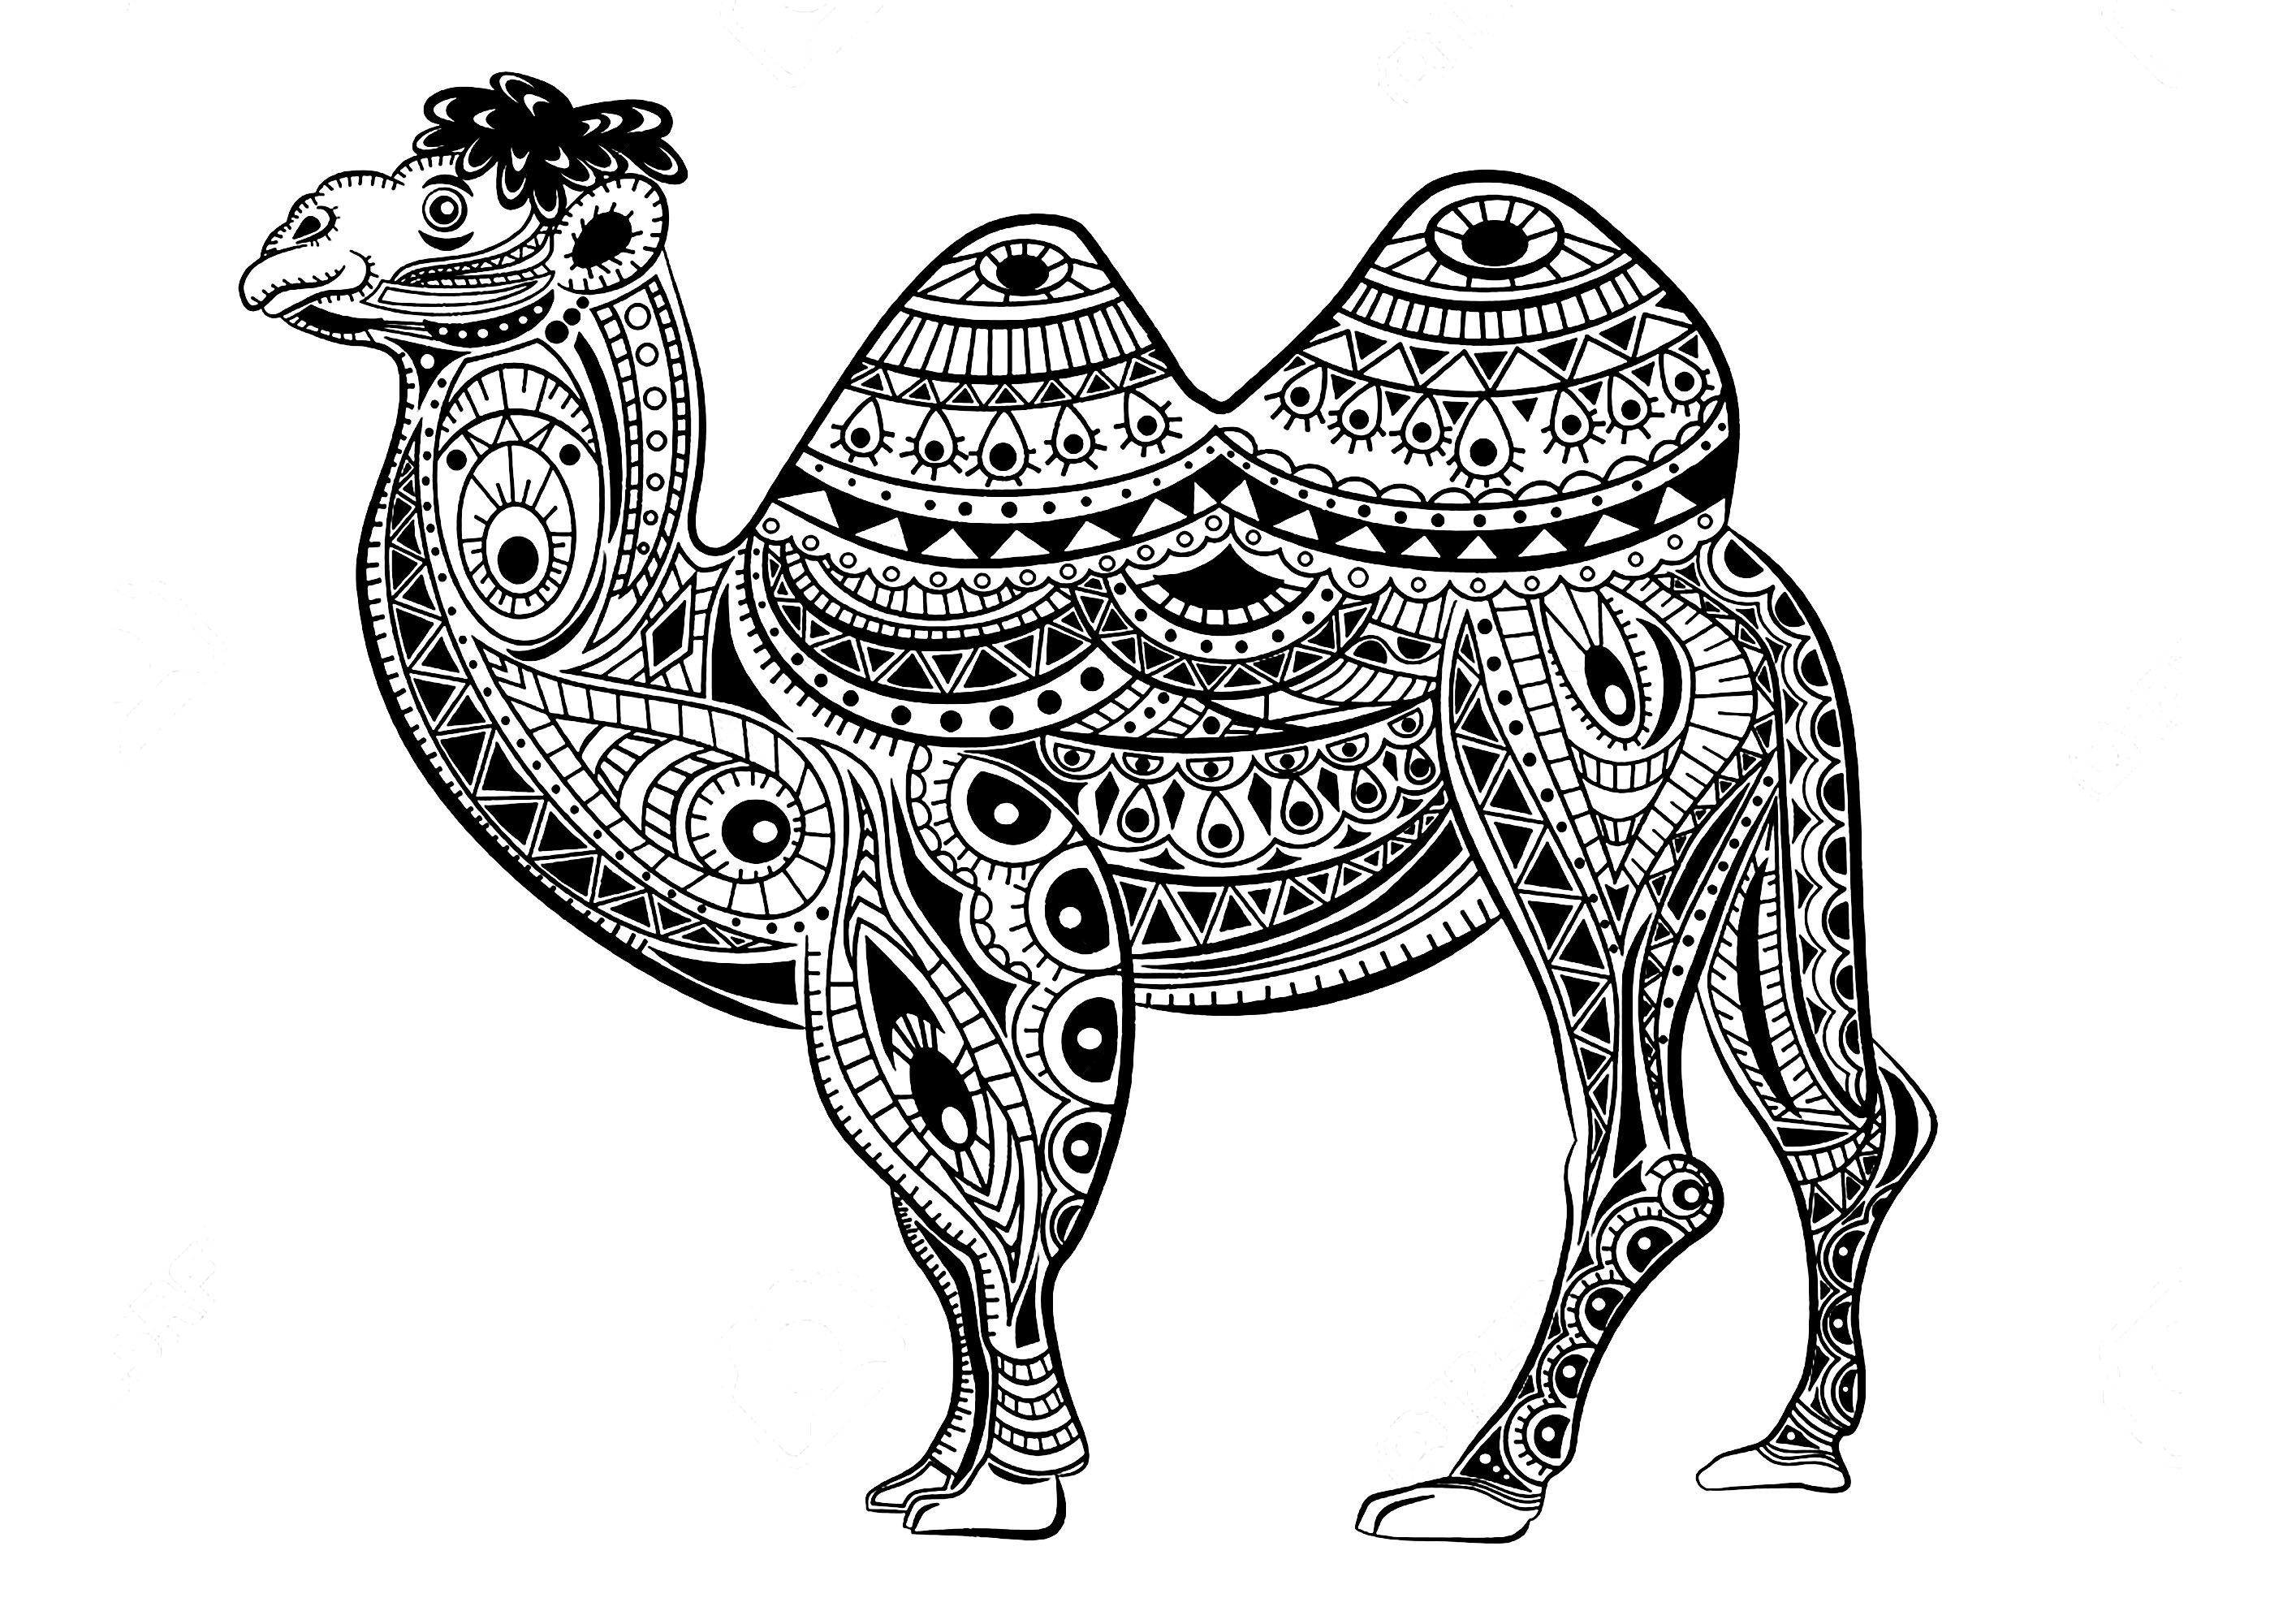 Simpatico cammello il cui corpo è fatto di motivi Zentangle, Artista : Vita Kosova   Fonte : 123rf